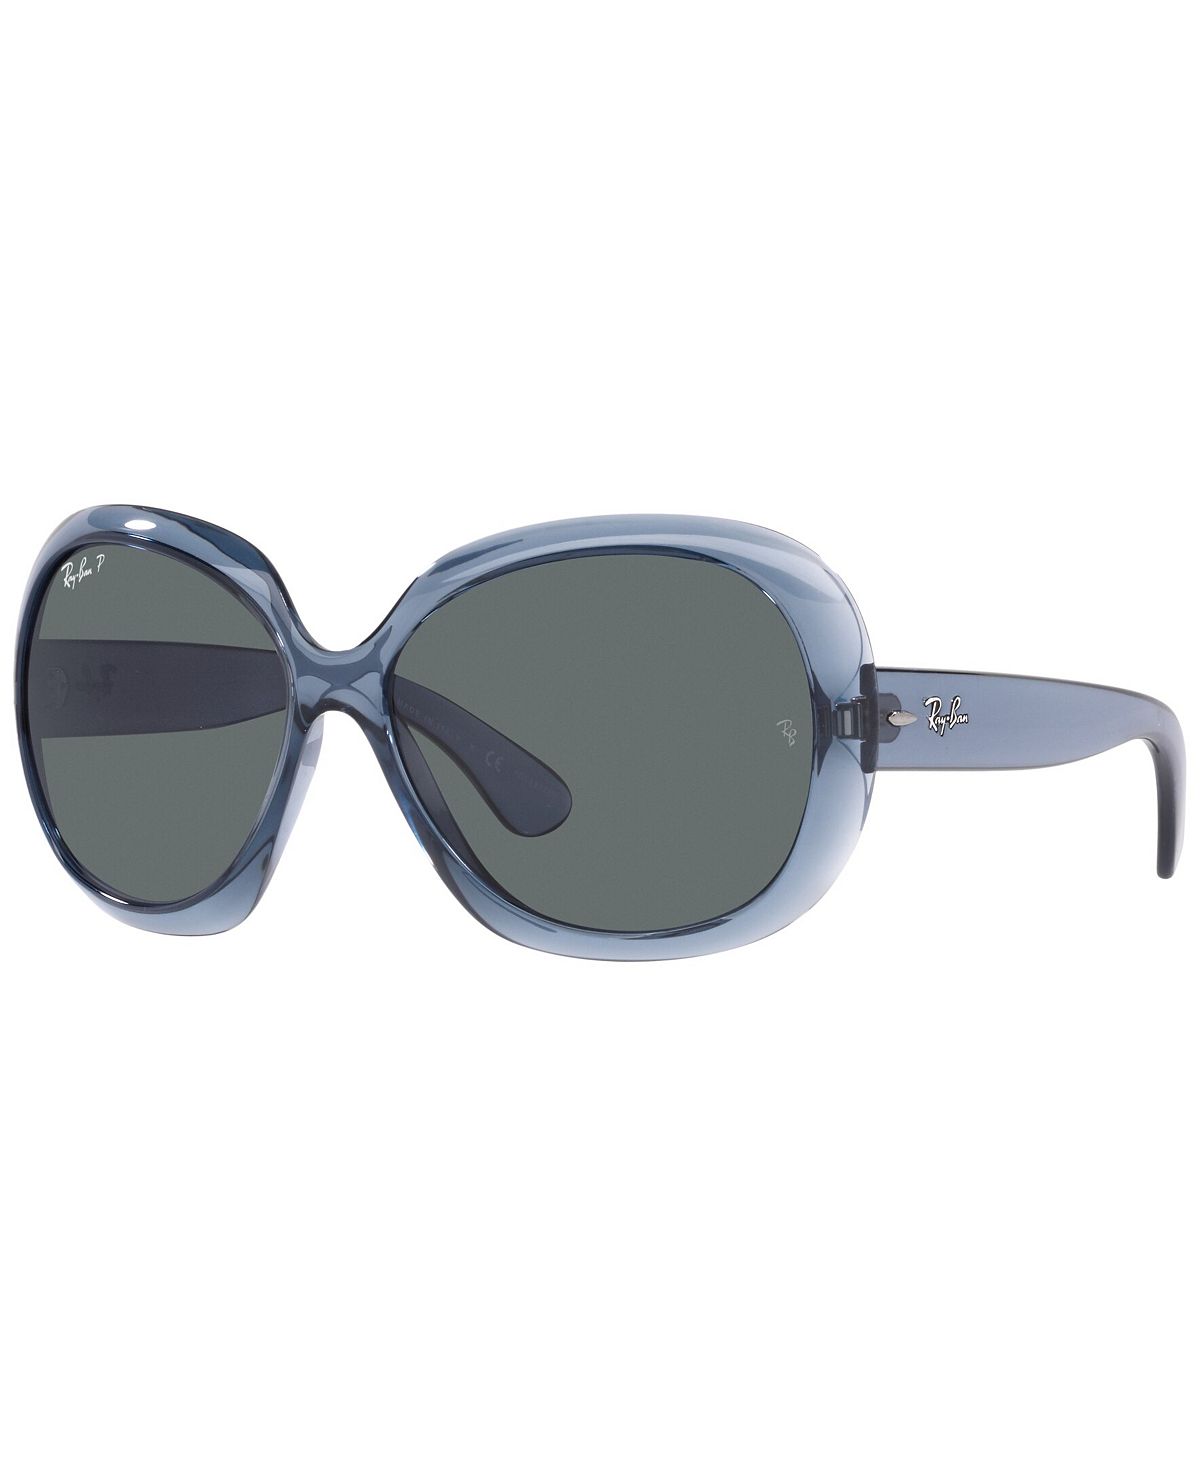 Женские поляризованные солнцезащитные очки, RB4098 JACKIE OHH II 60 Ray-Ban apocalyptica 7th symphony 2lp reissue transparent blue vinyl